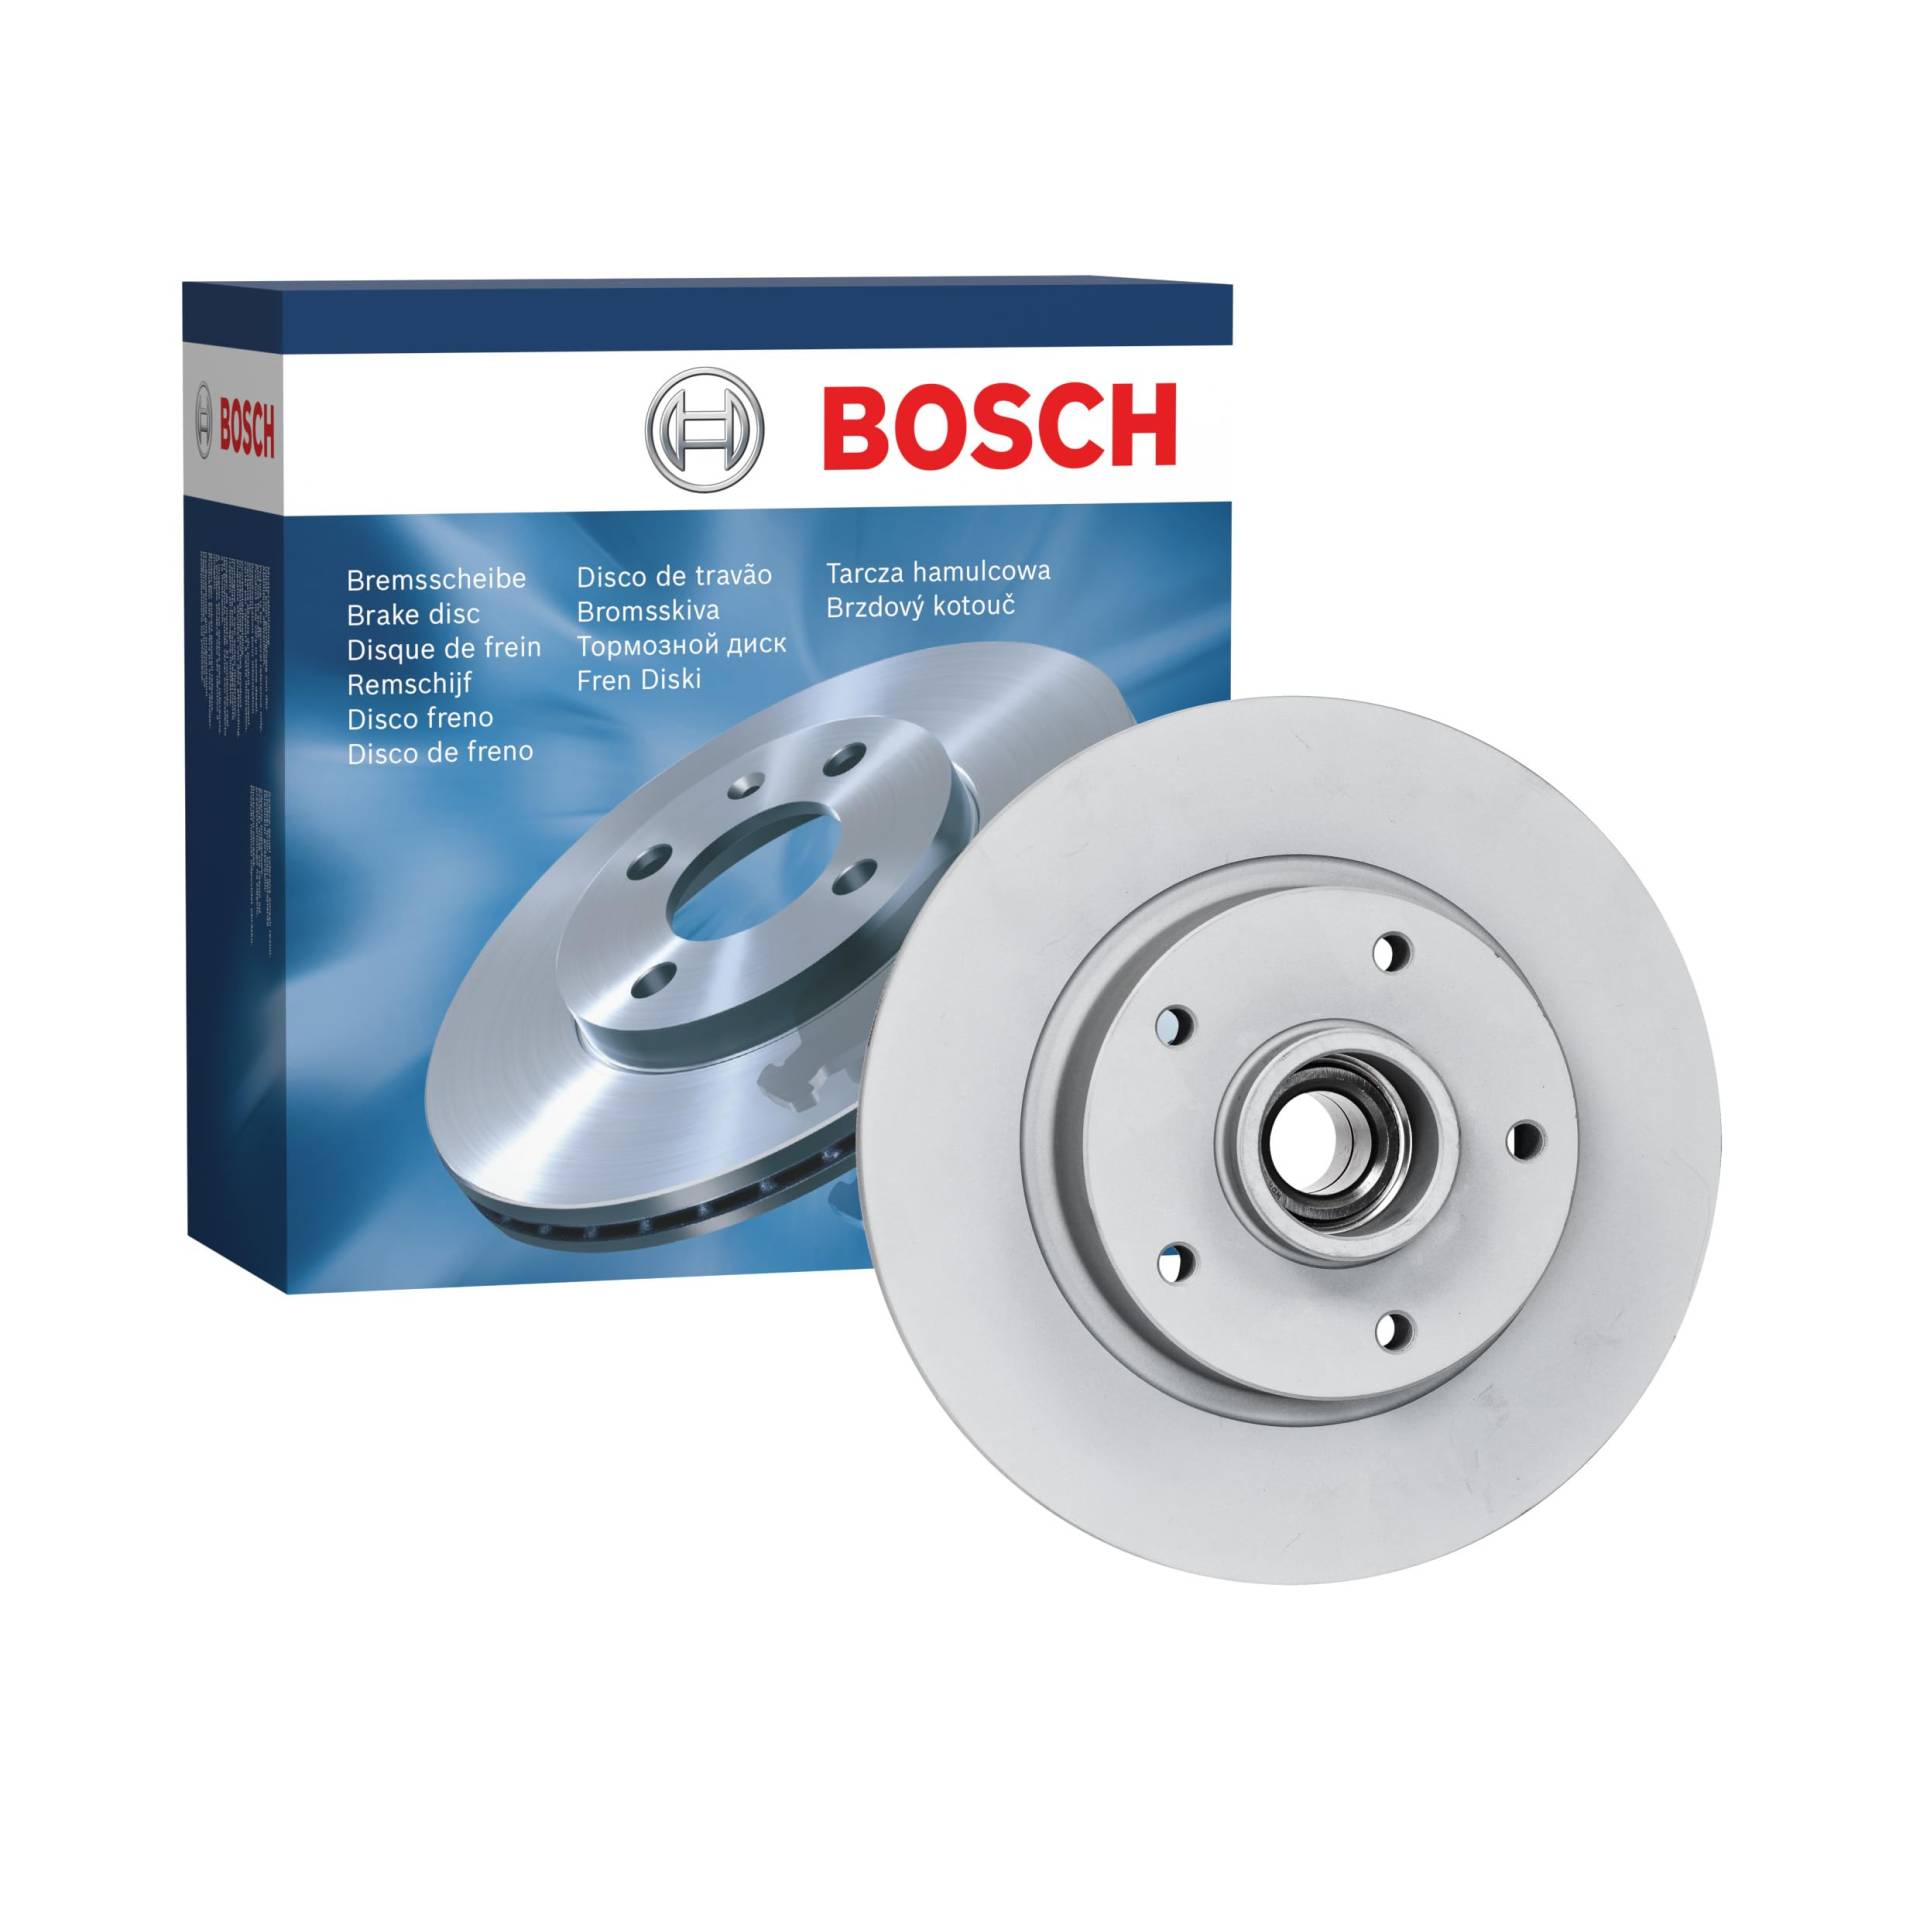 Bosch BD2227 Bremsscheiben mit Radlager - Hinterachse - ECE-R90 Zertifizierung - eine Bremsscheibe von Bosch Automotive